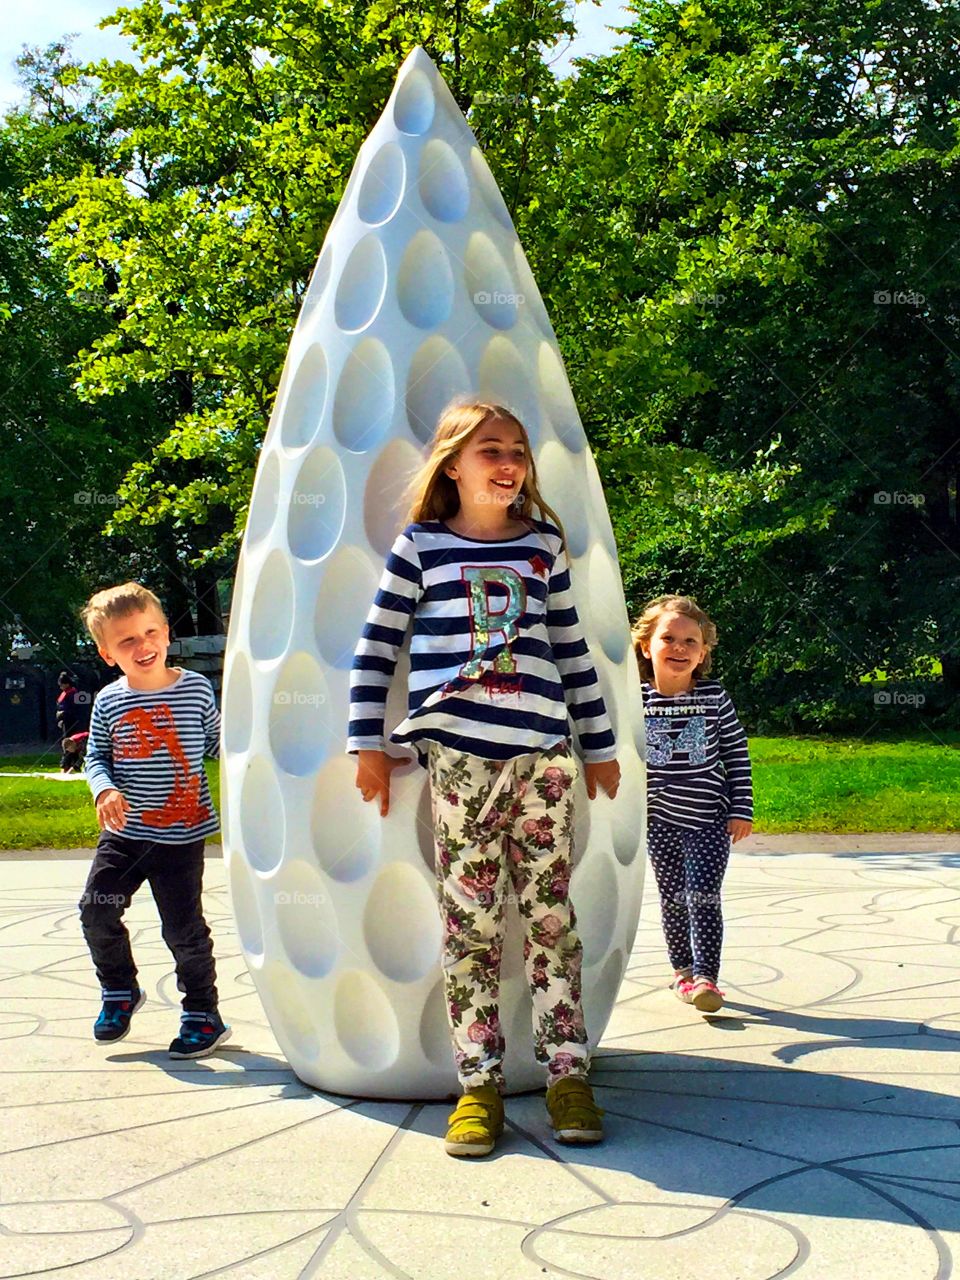 Children standing near white sculpture in park